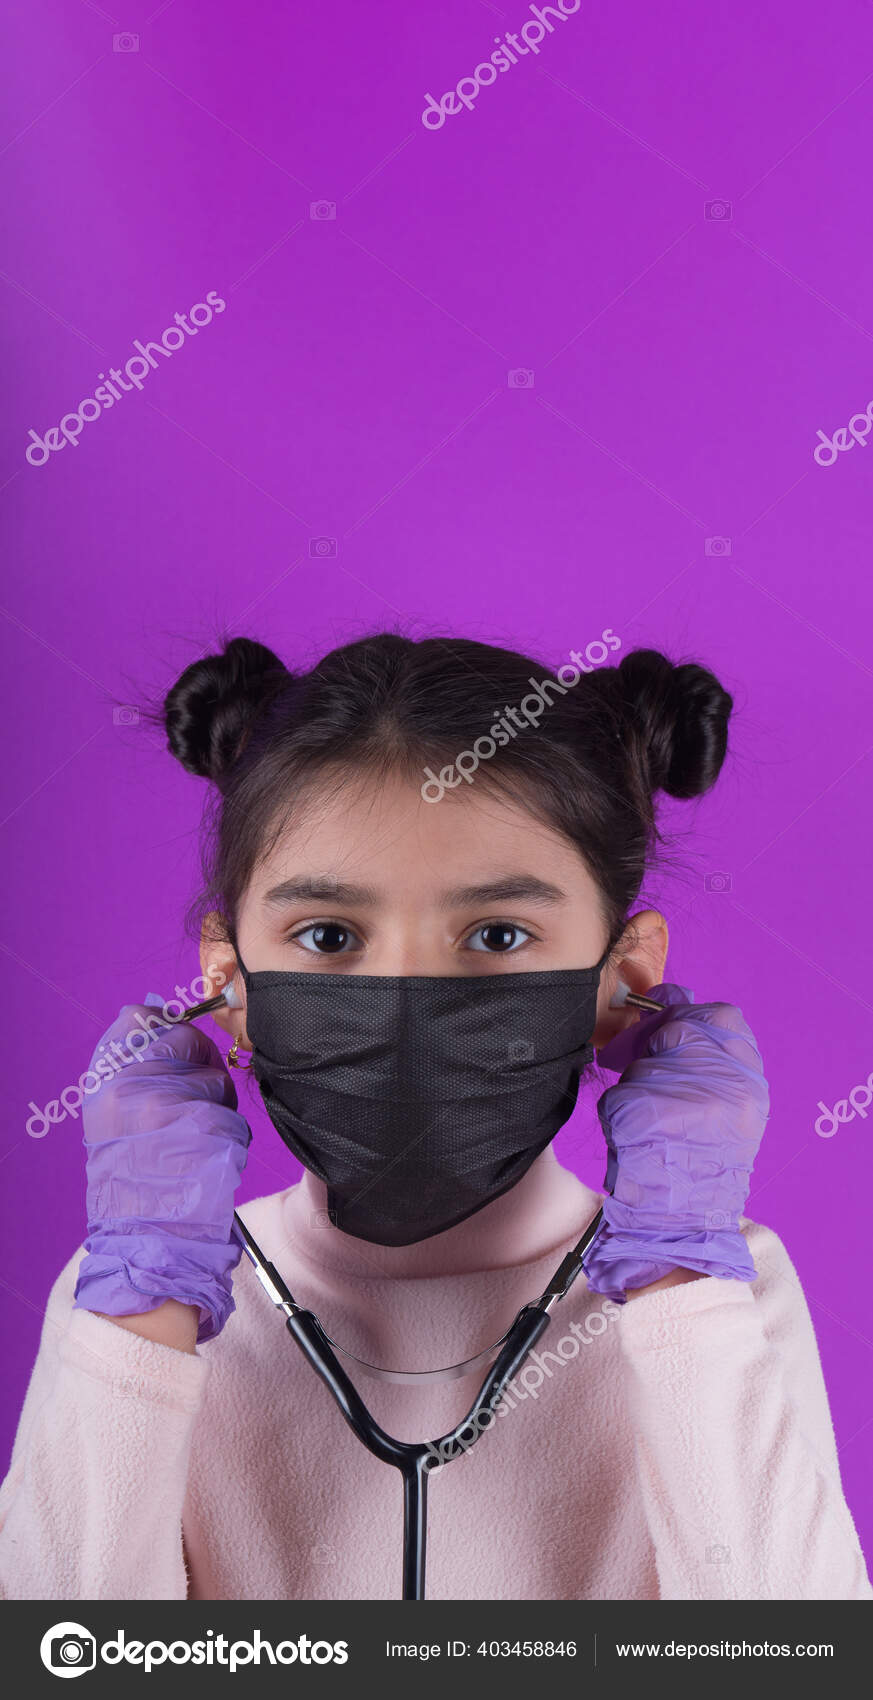 紫色の背景に聴診器とカラーマスクを持つかわいい女の子 家にいて Covy 19を停止します ウイルス対策装置 隔離だ 女の子は医者を演じる 教育と職業概念です じっとしてろ 面白い表現 ストック写真 C Creator999